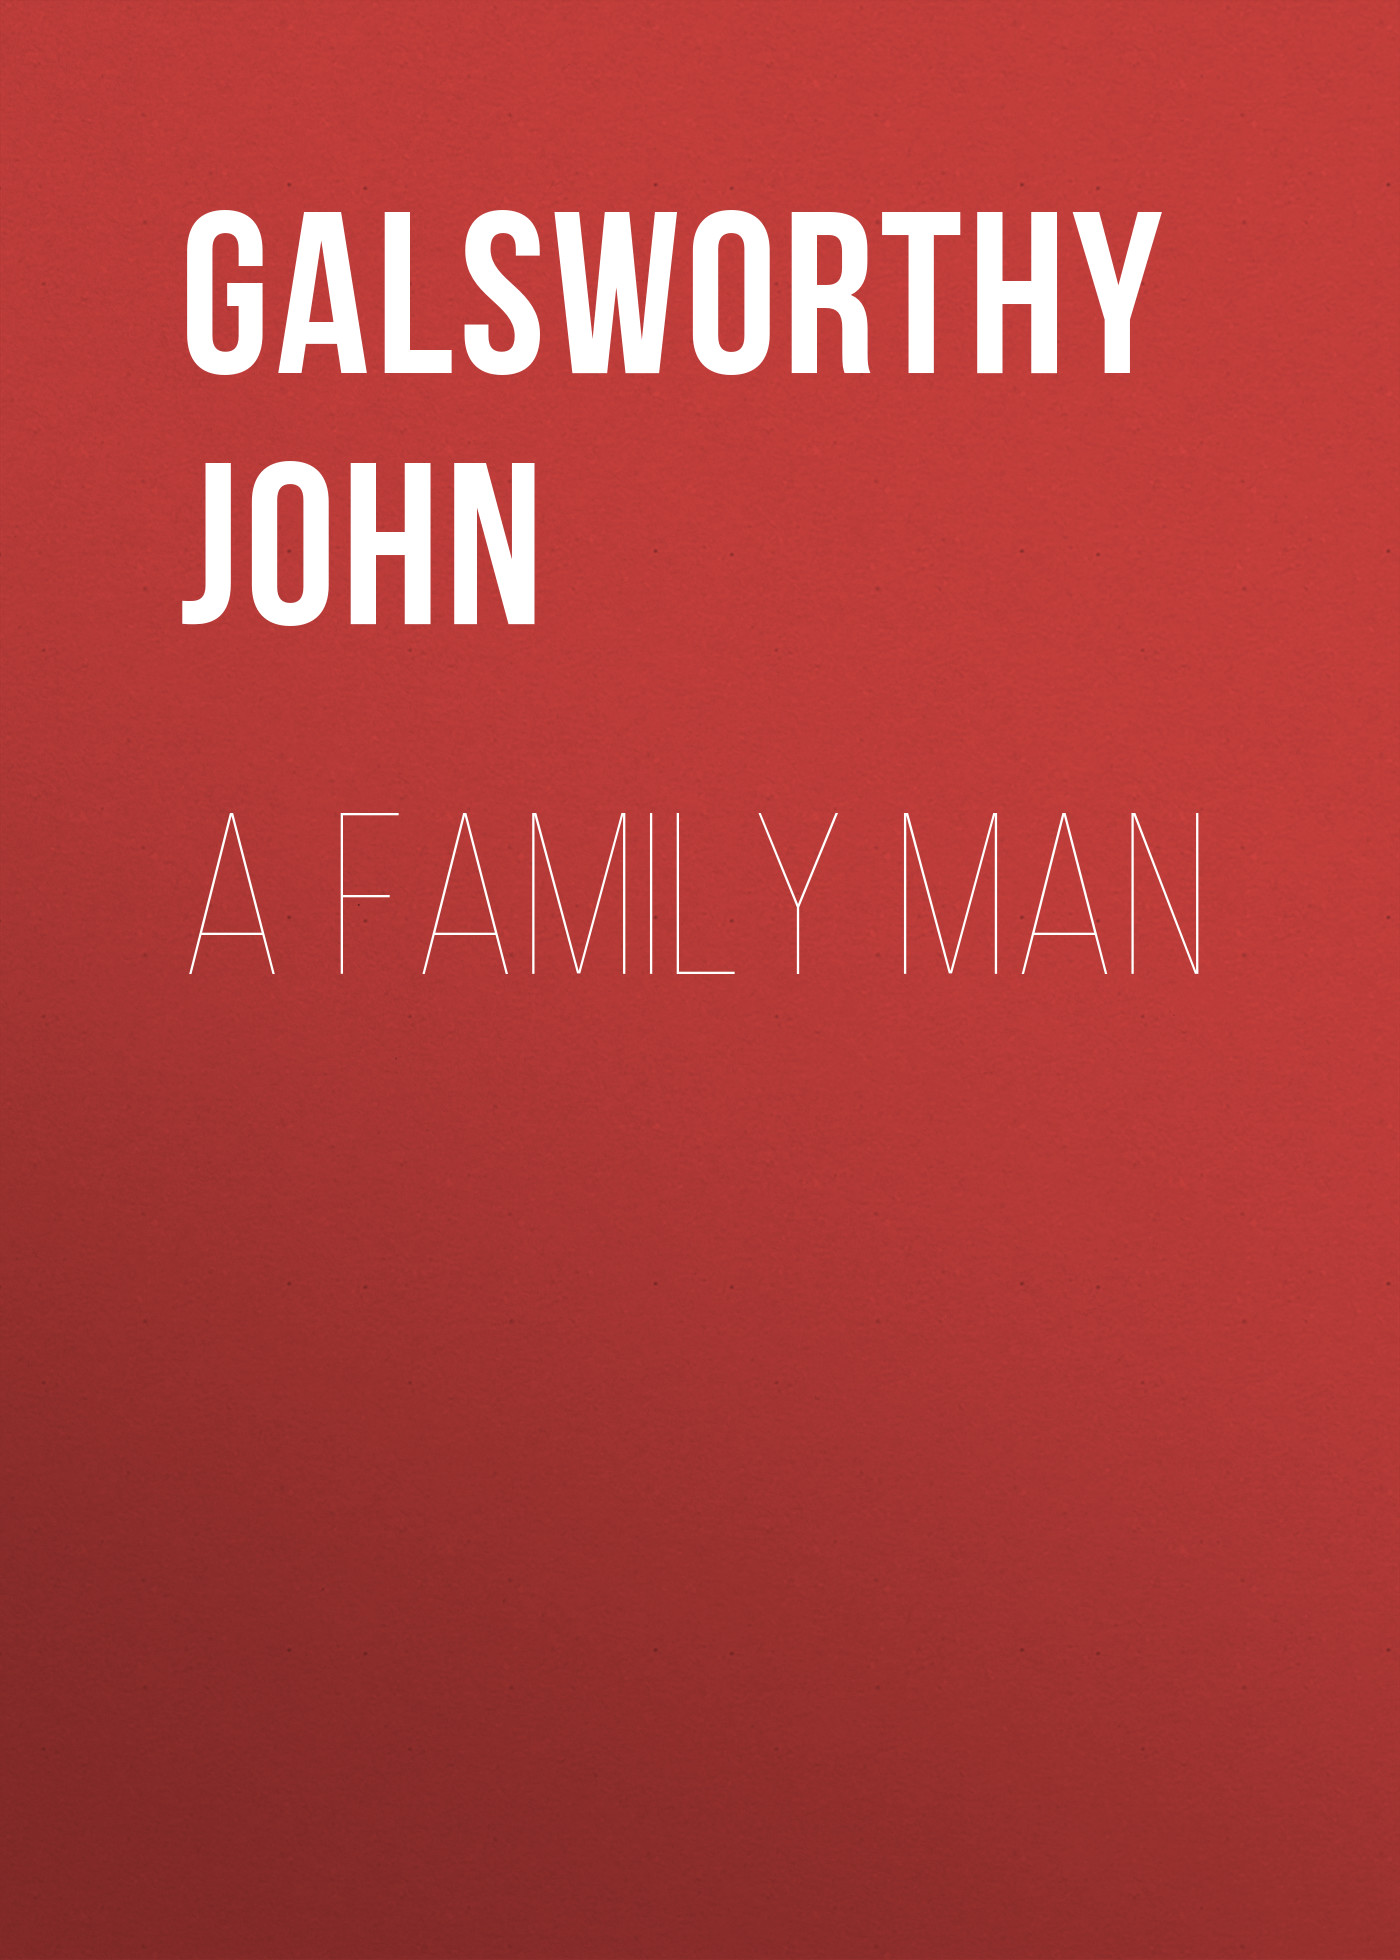 Книга A Family Man  из серии , созданная John Galsworthy, может относится к жанру Зарубежная старинная литература, Зарубежная классика. Стоимость электронной книги A Family Man  с идентификатором 25202391 составляет 0 руб.